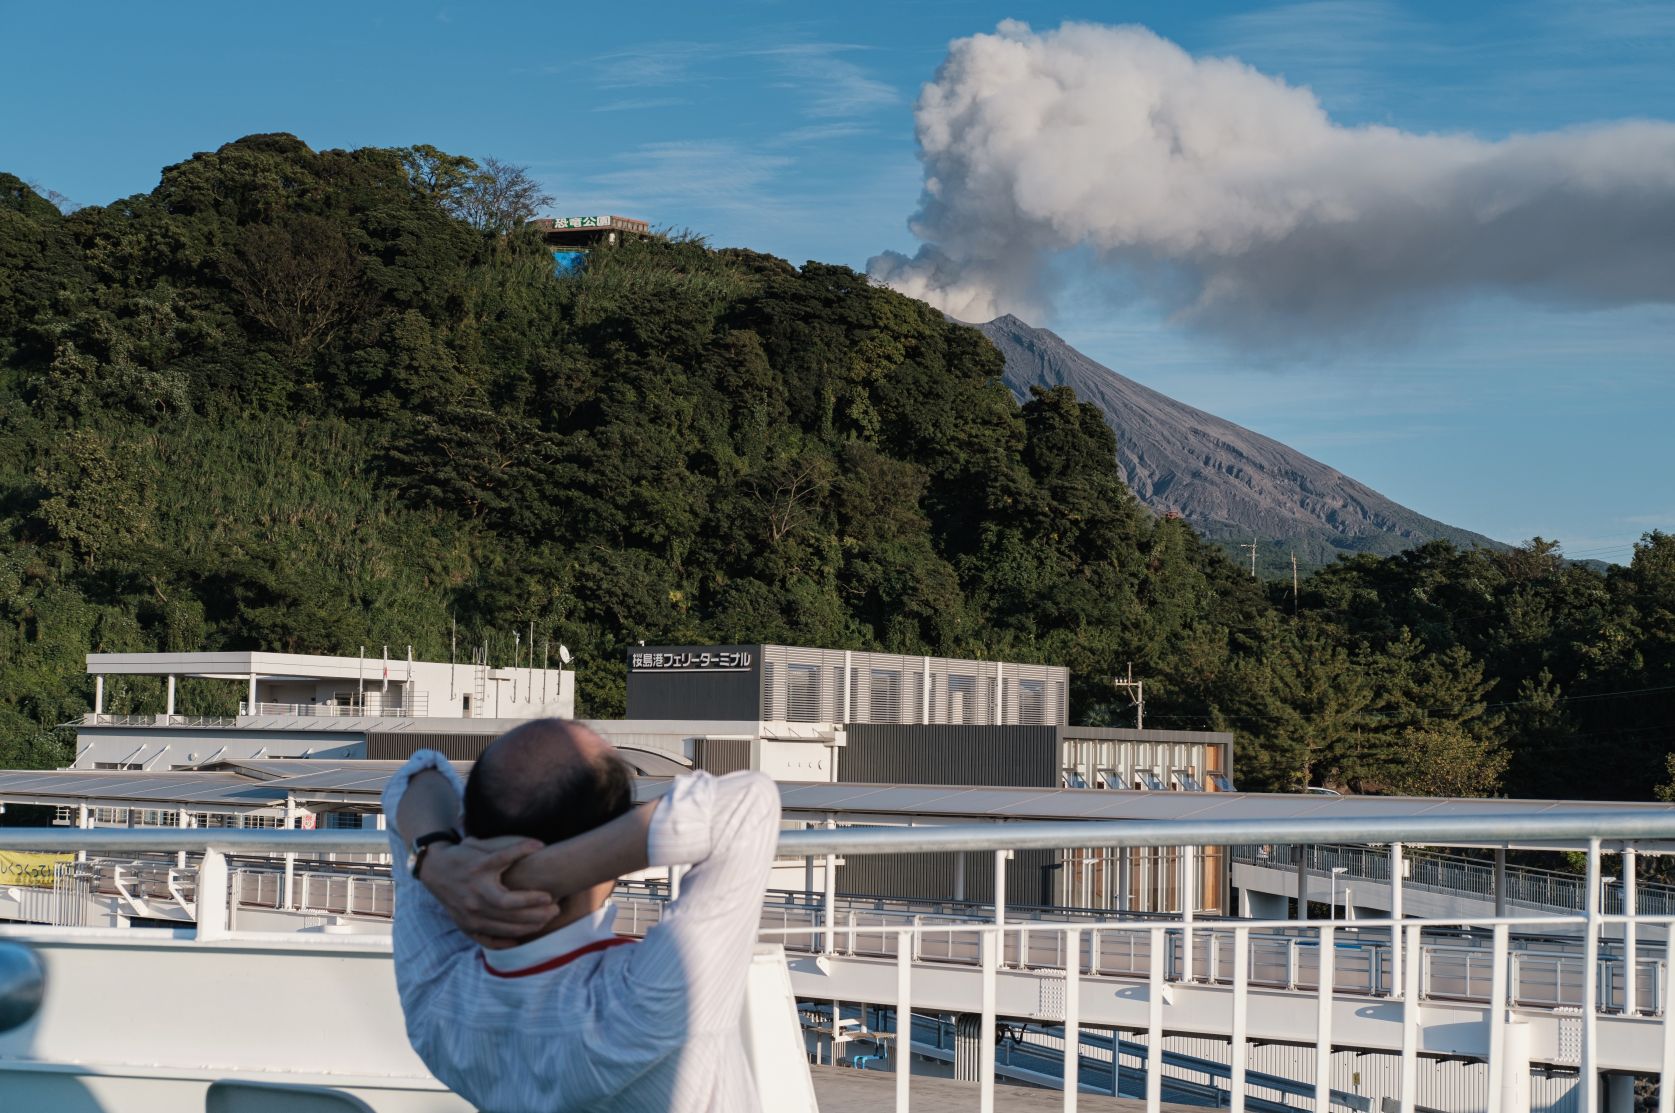 Un habitant observe tranquillement la fumée du volcan ©Florent Guérout